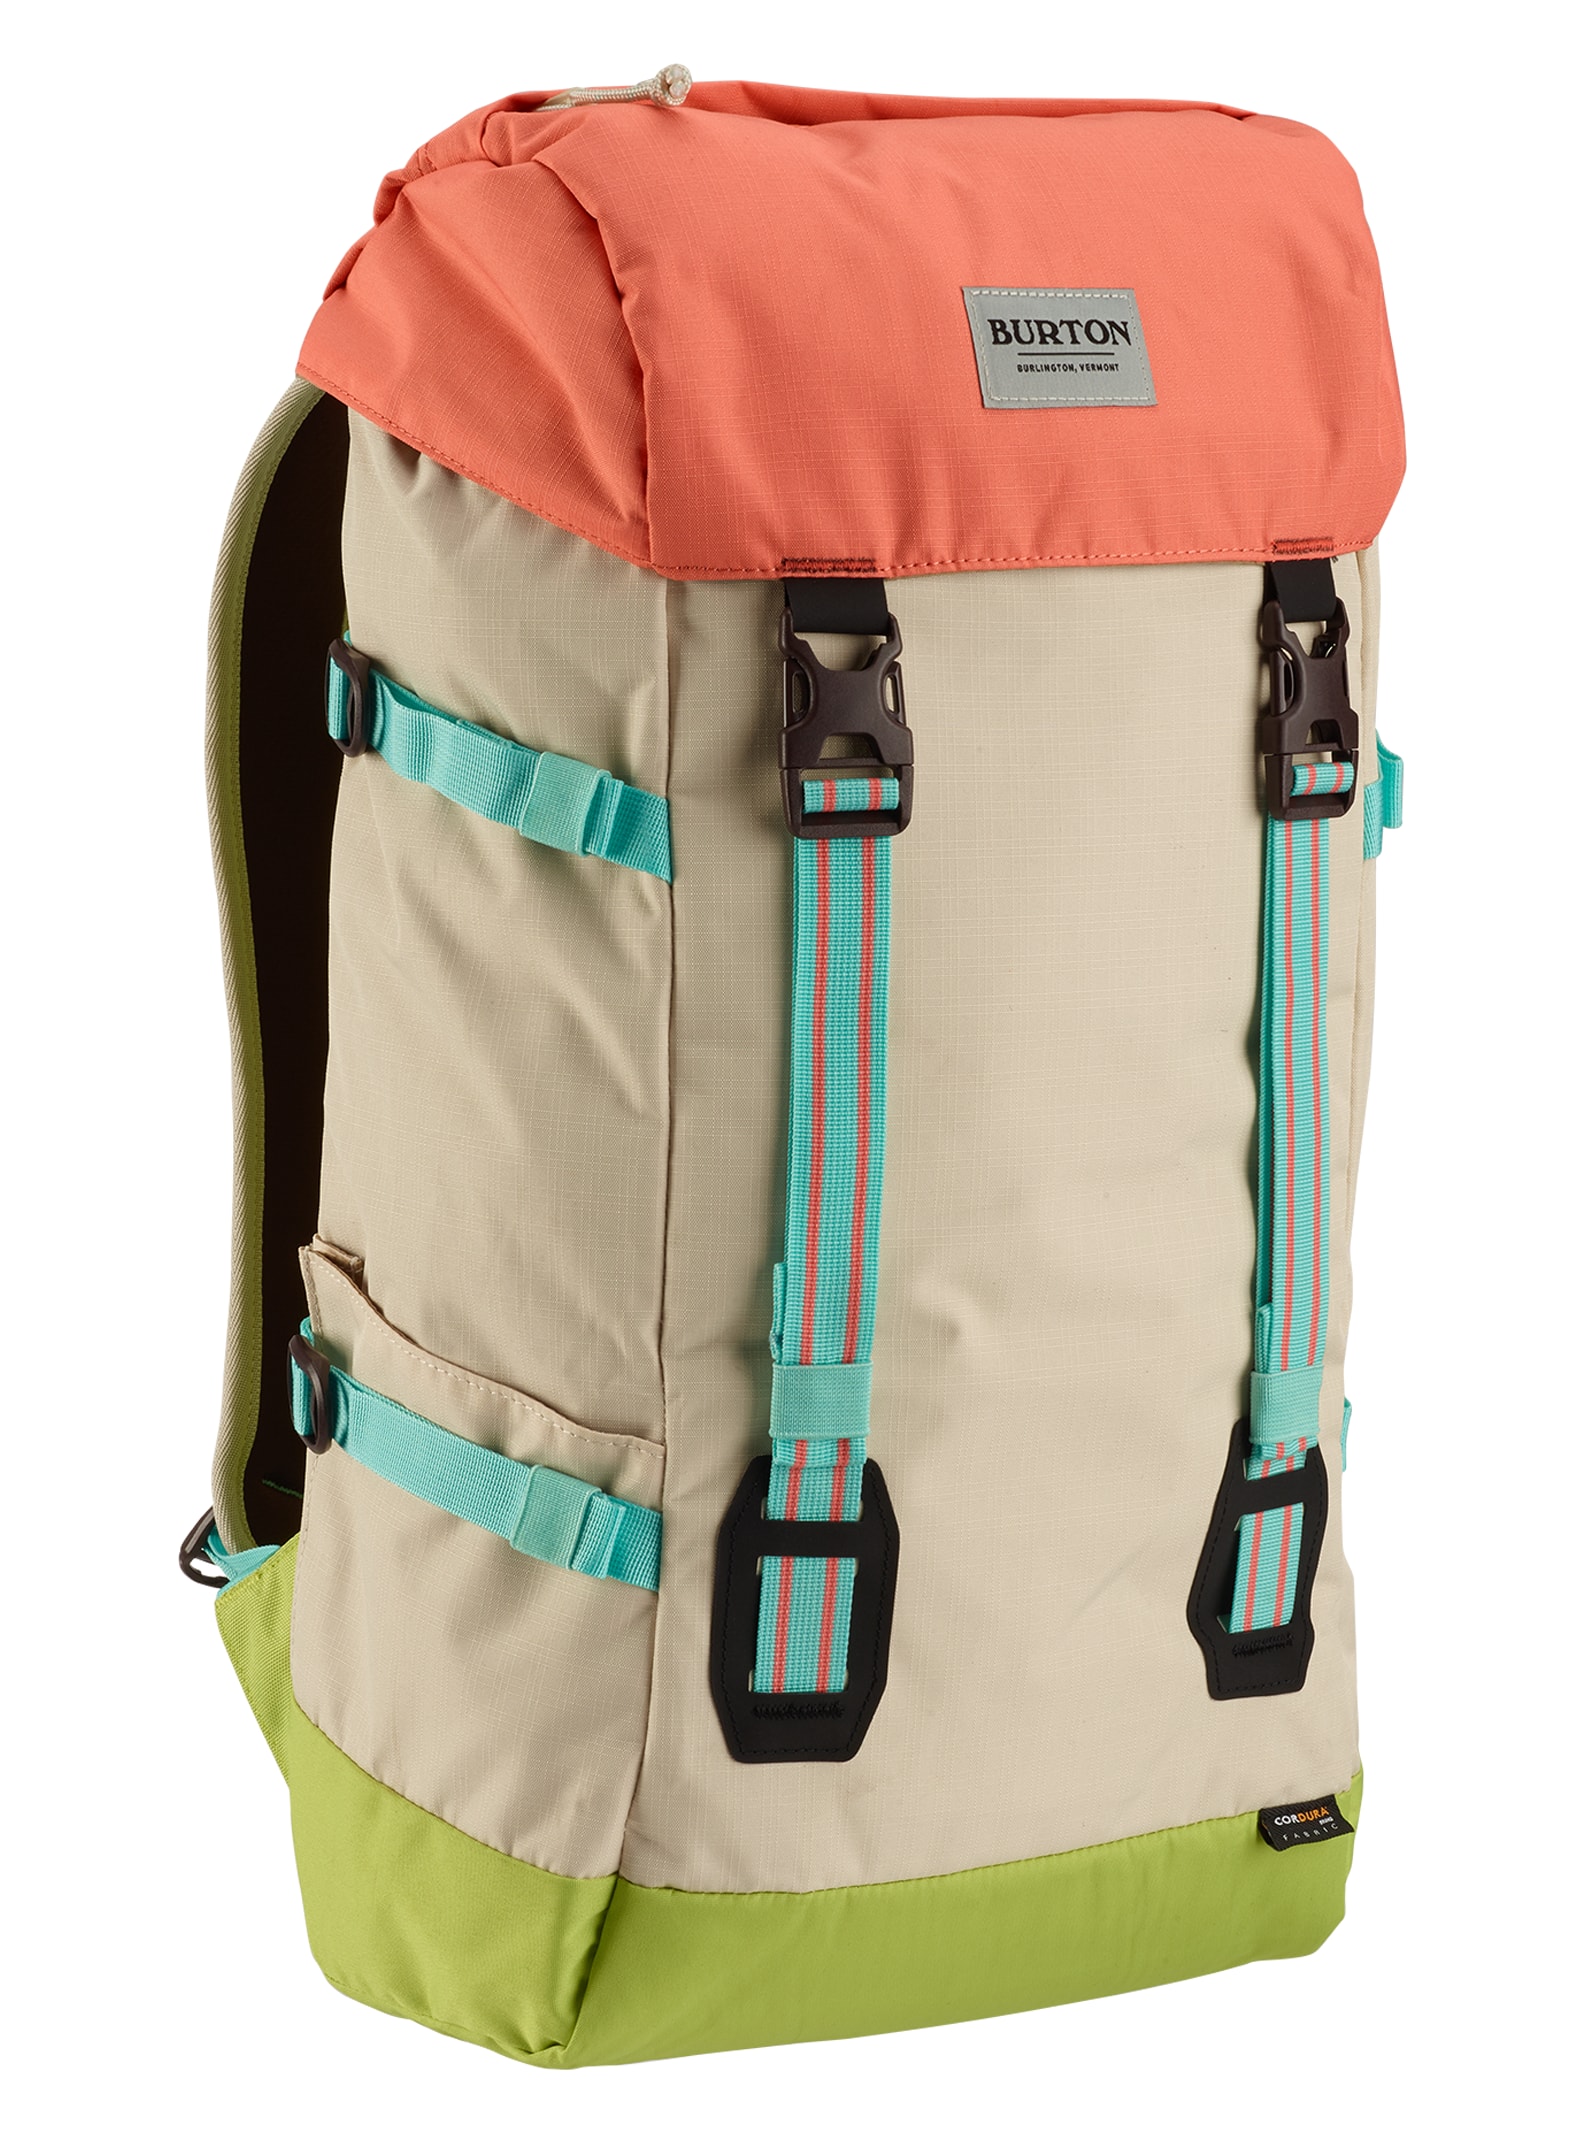 Burton / Tinder 2.0 30L Backpack